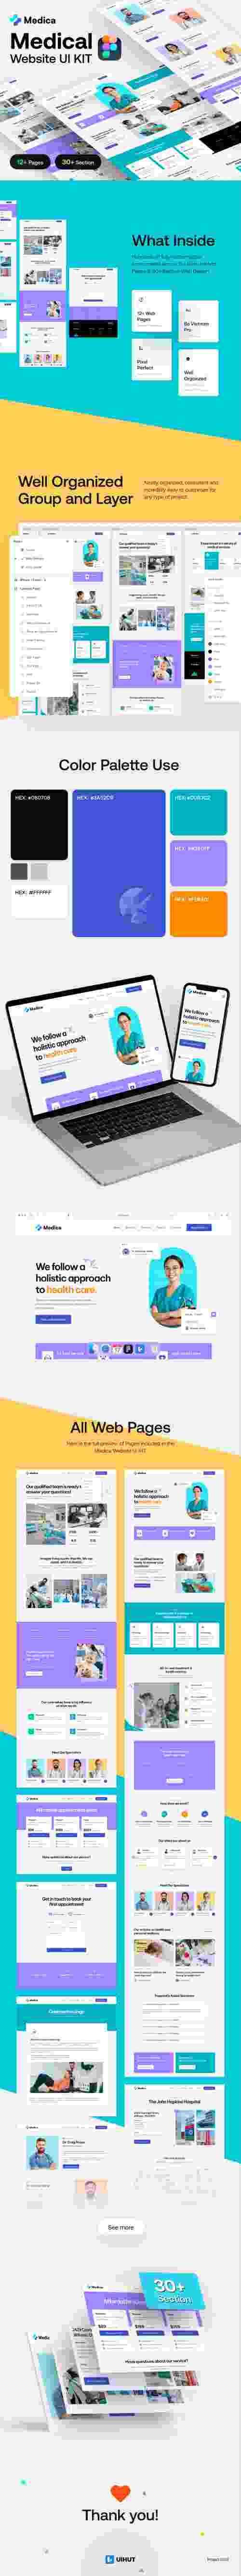 UIHut - Healthcare Service Website Design Theme - 25177